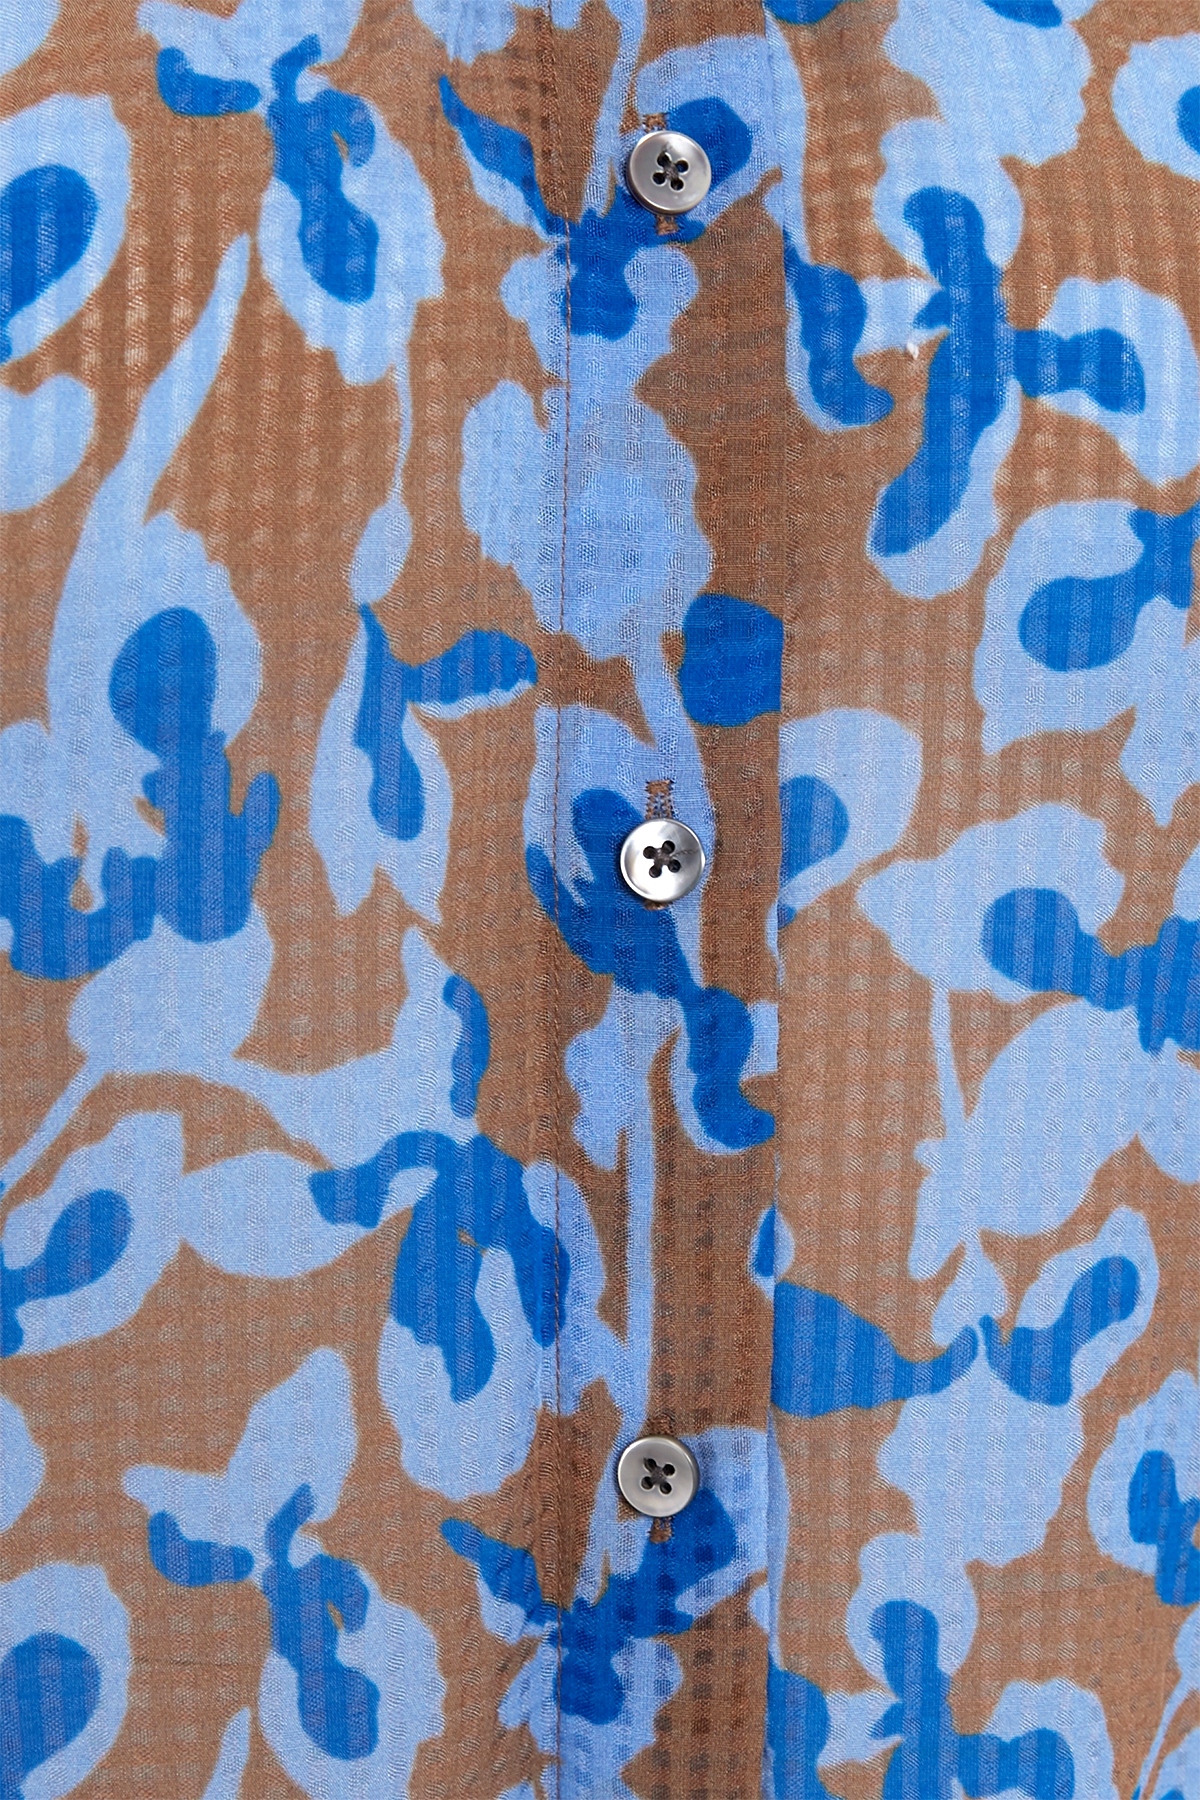 Bluse mit Print aus Baumwoll-Voile